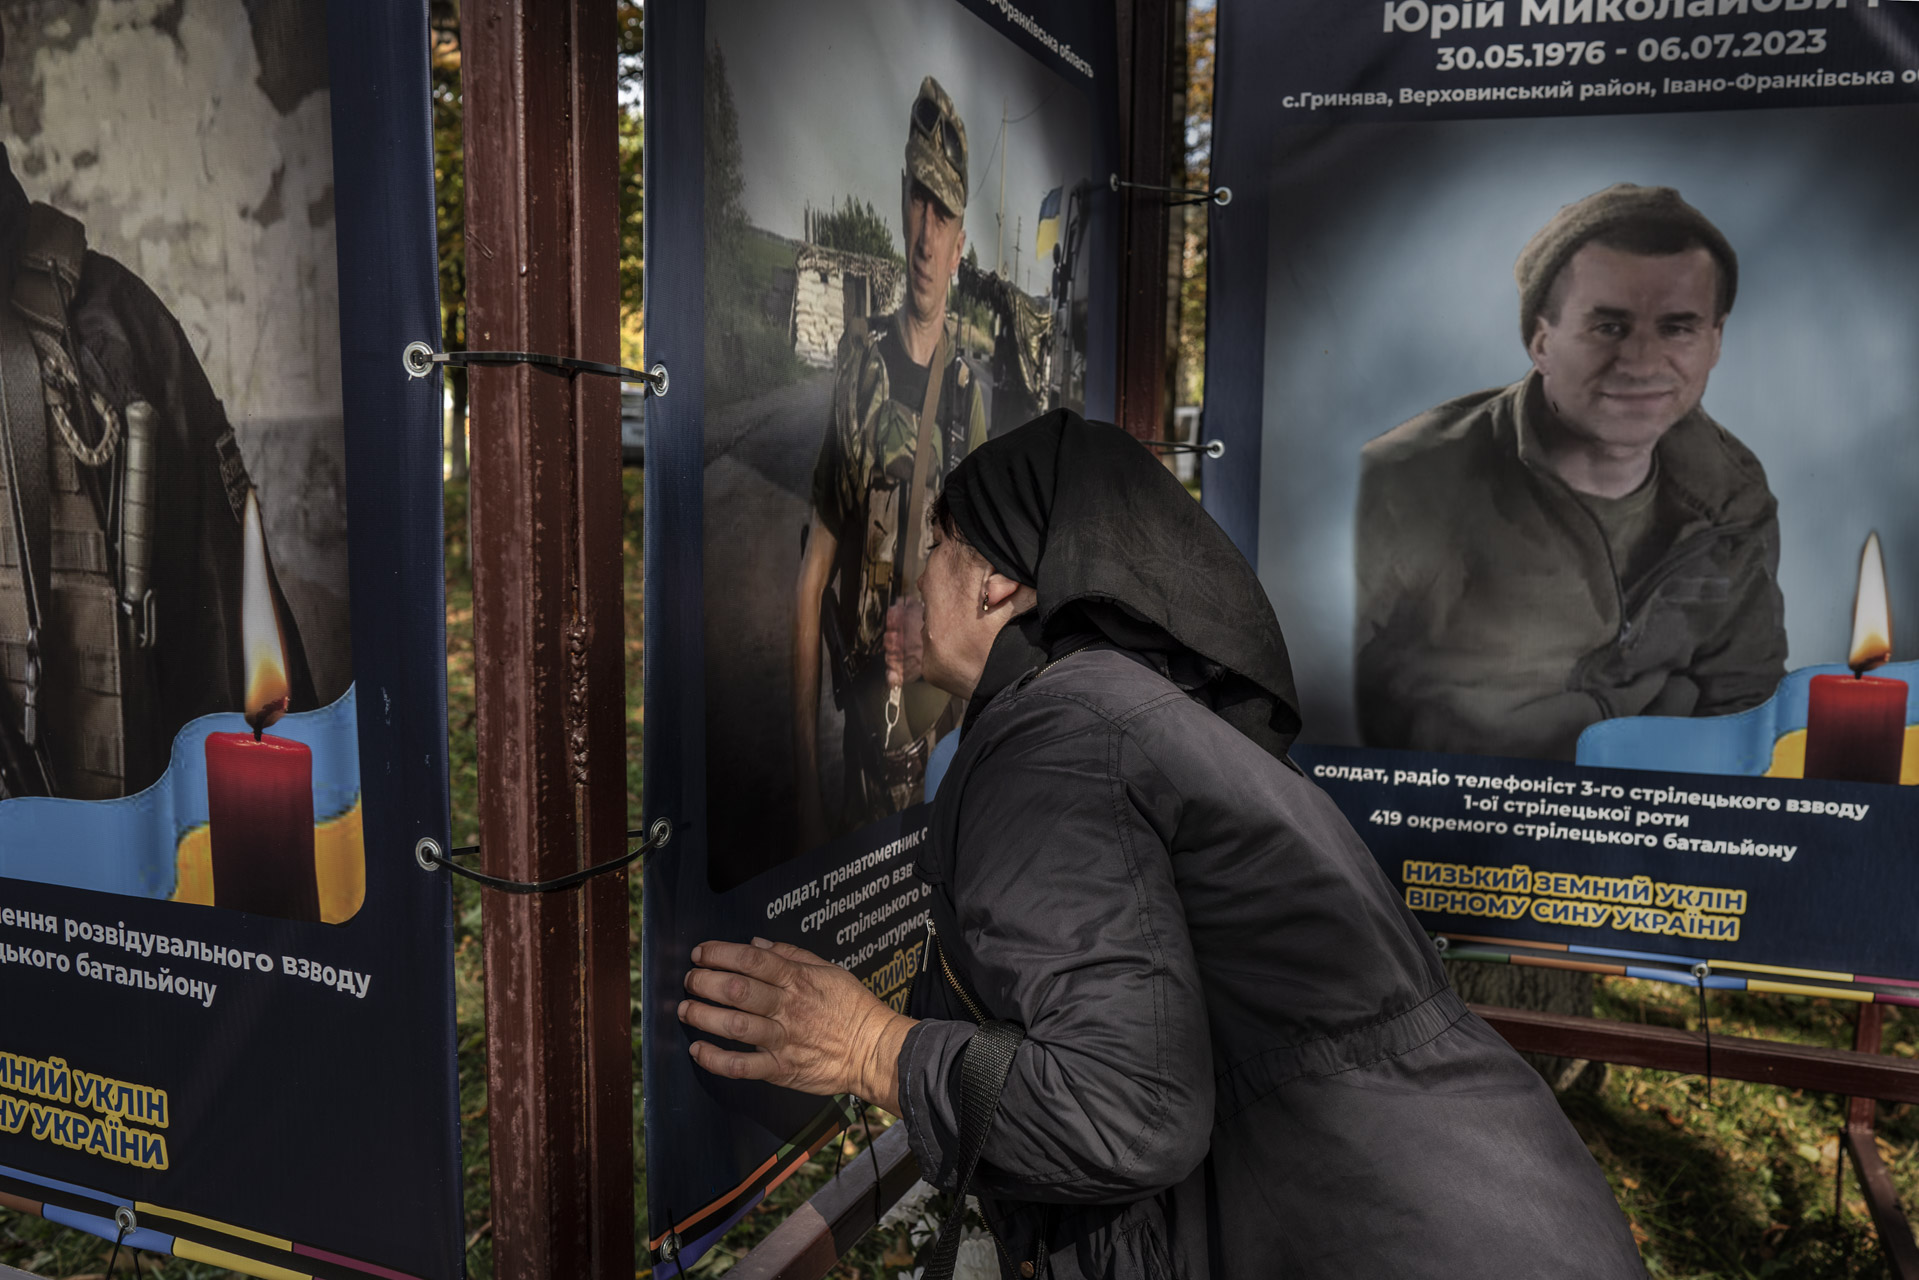 Poległych obrońców Ukrainy upamiętniają tablice, które stały się częścią edukacji narodowo-patriotycznej. Podkreślają gotowość do walki oraz poświęcenia życia.